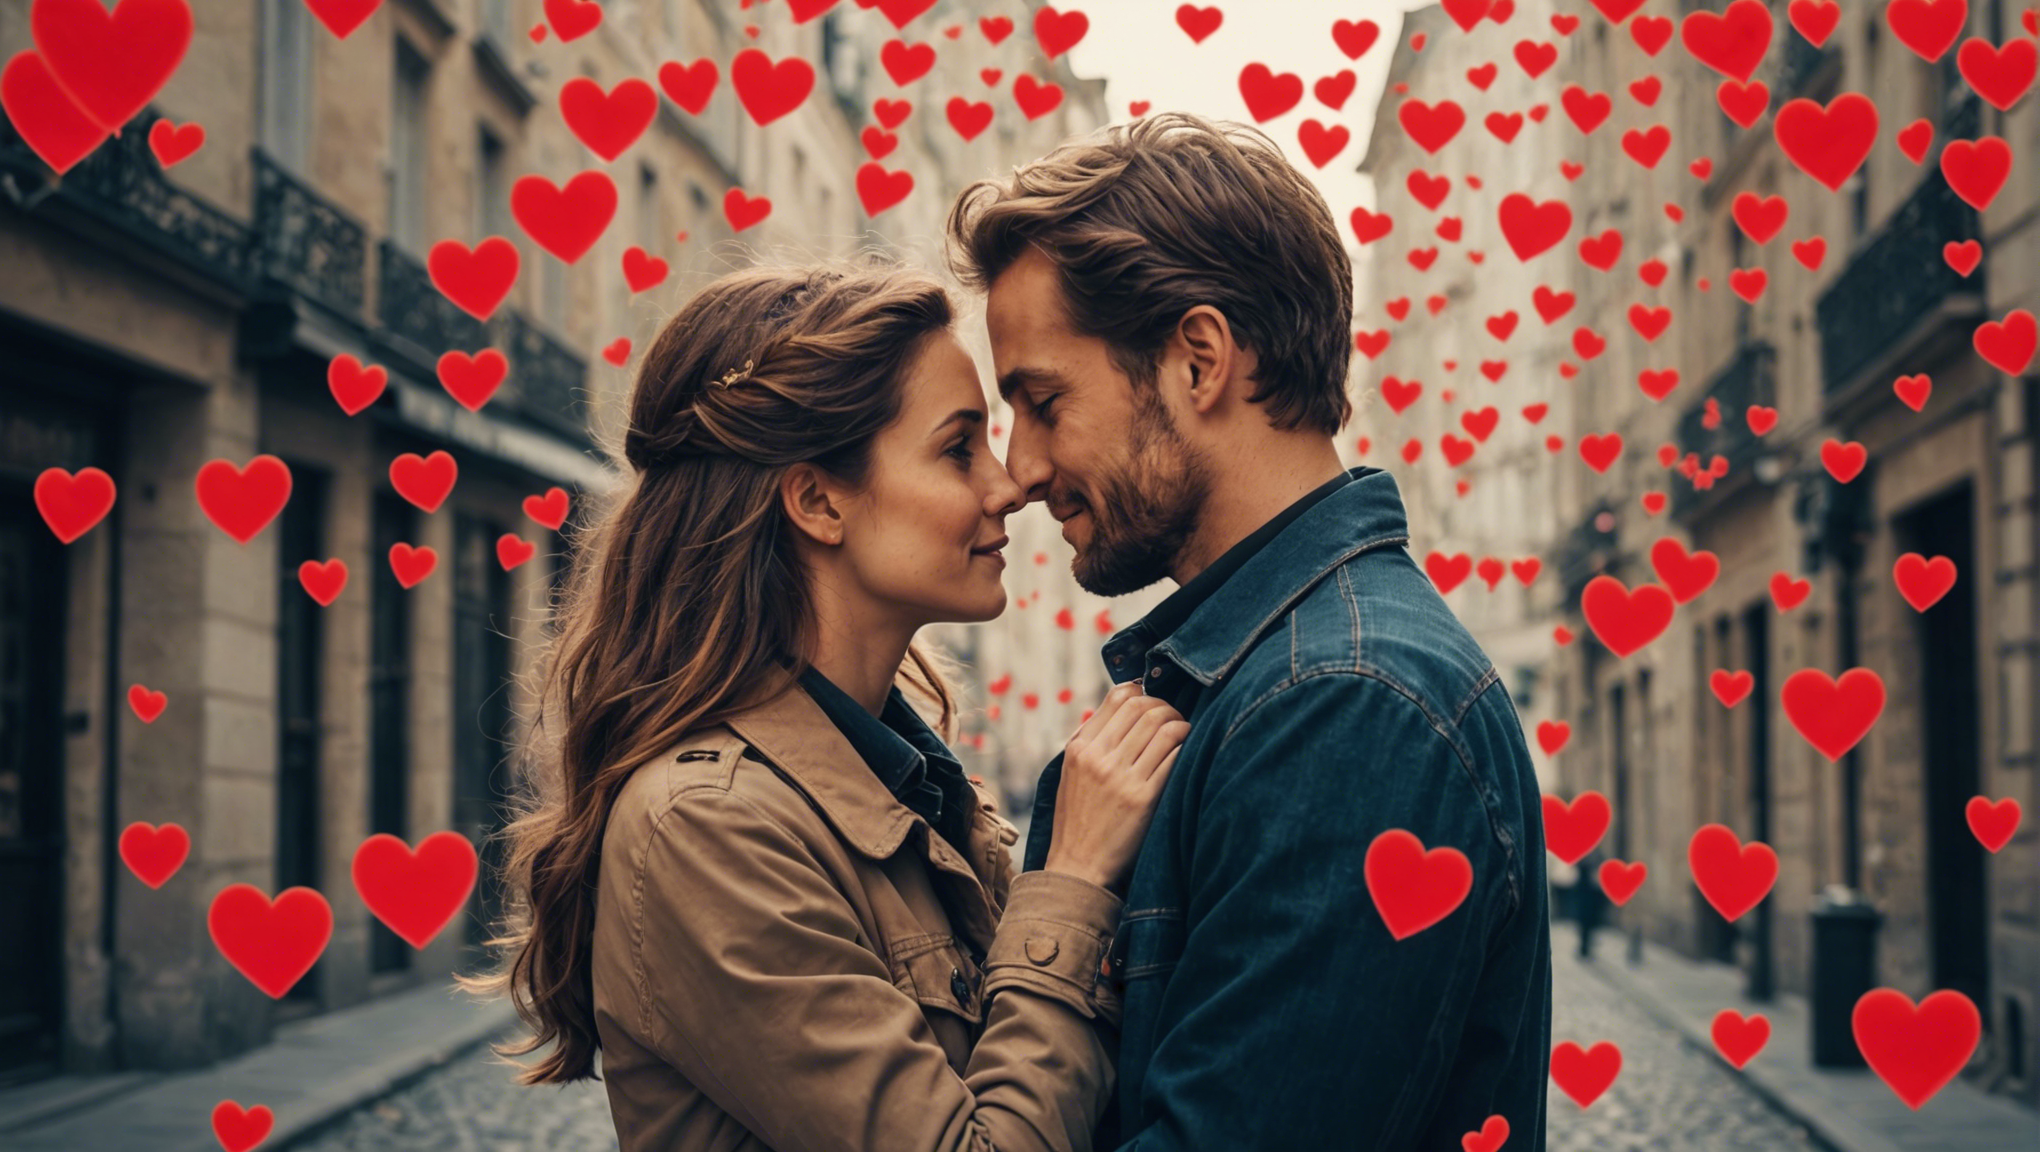 découvrez comment capturer une magnifique image d'amour romantique avec nos conseils et astuces pour immortaliser ces moments précieux.